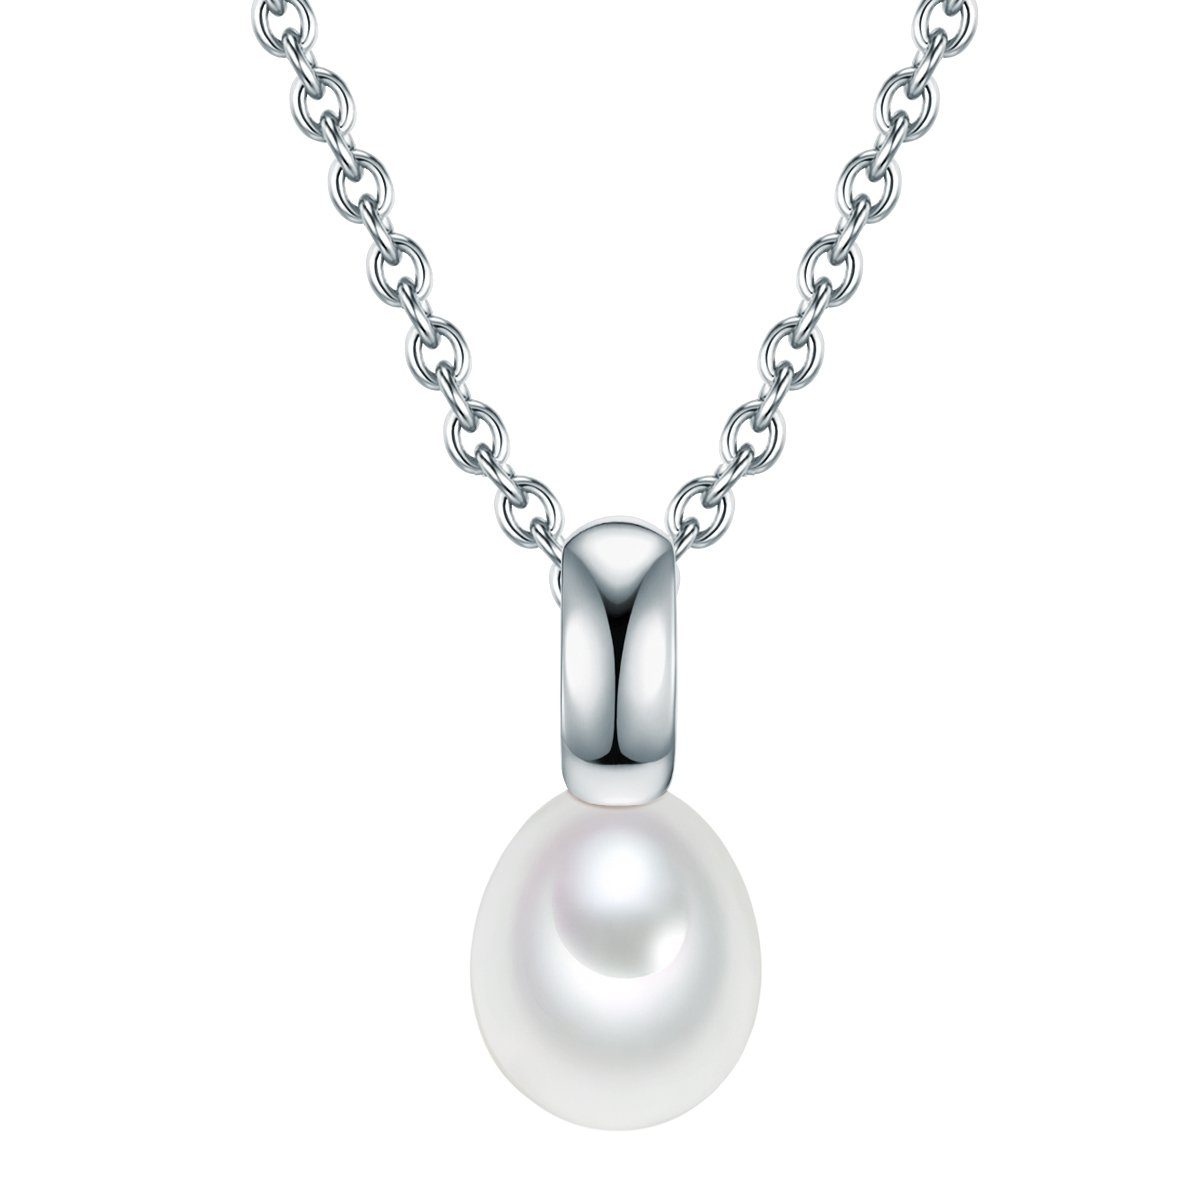 Süßwasser-Zuchtperlen Pearls silber, mit Silberkette Valero